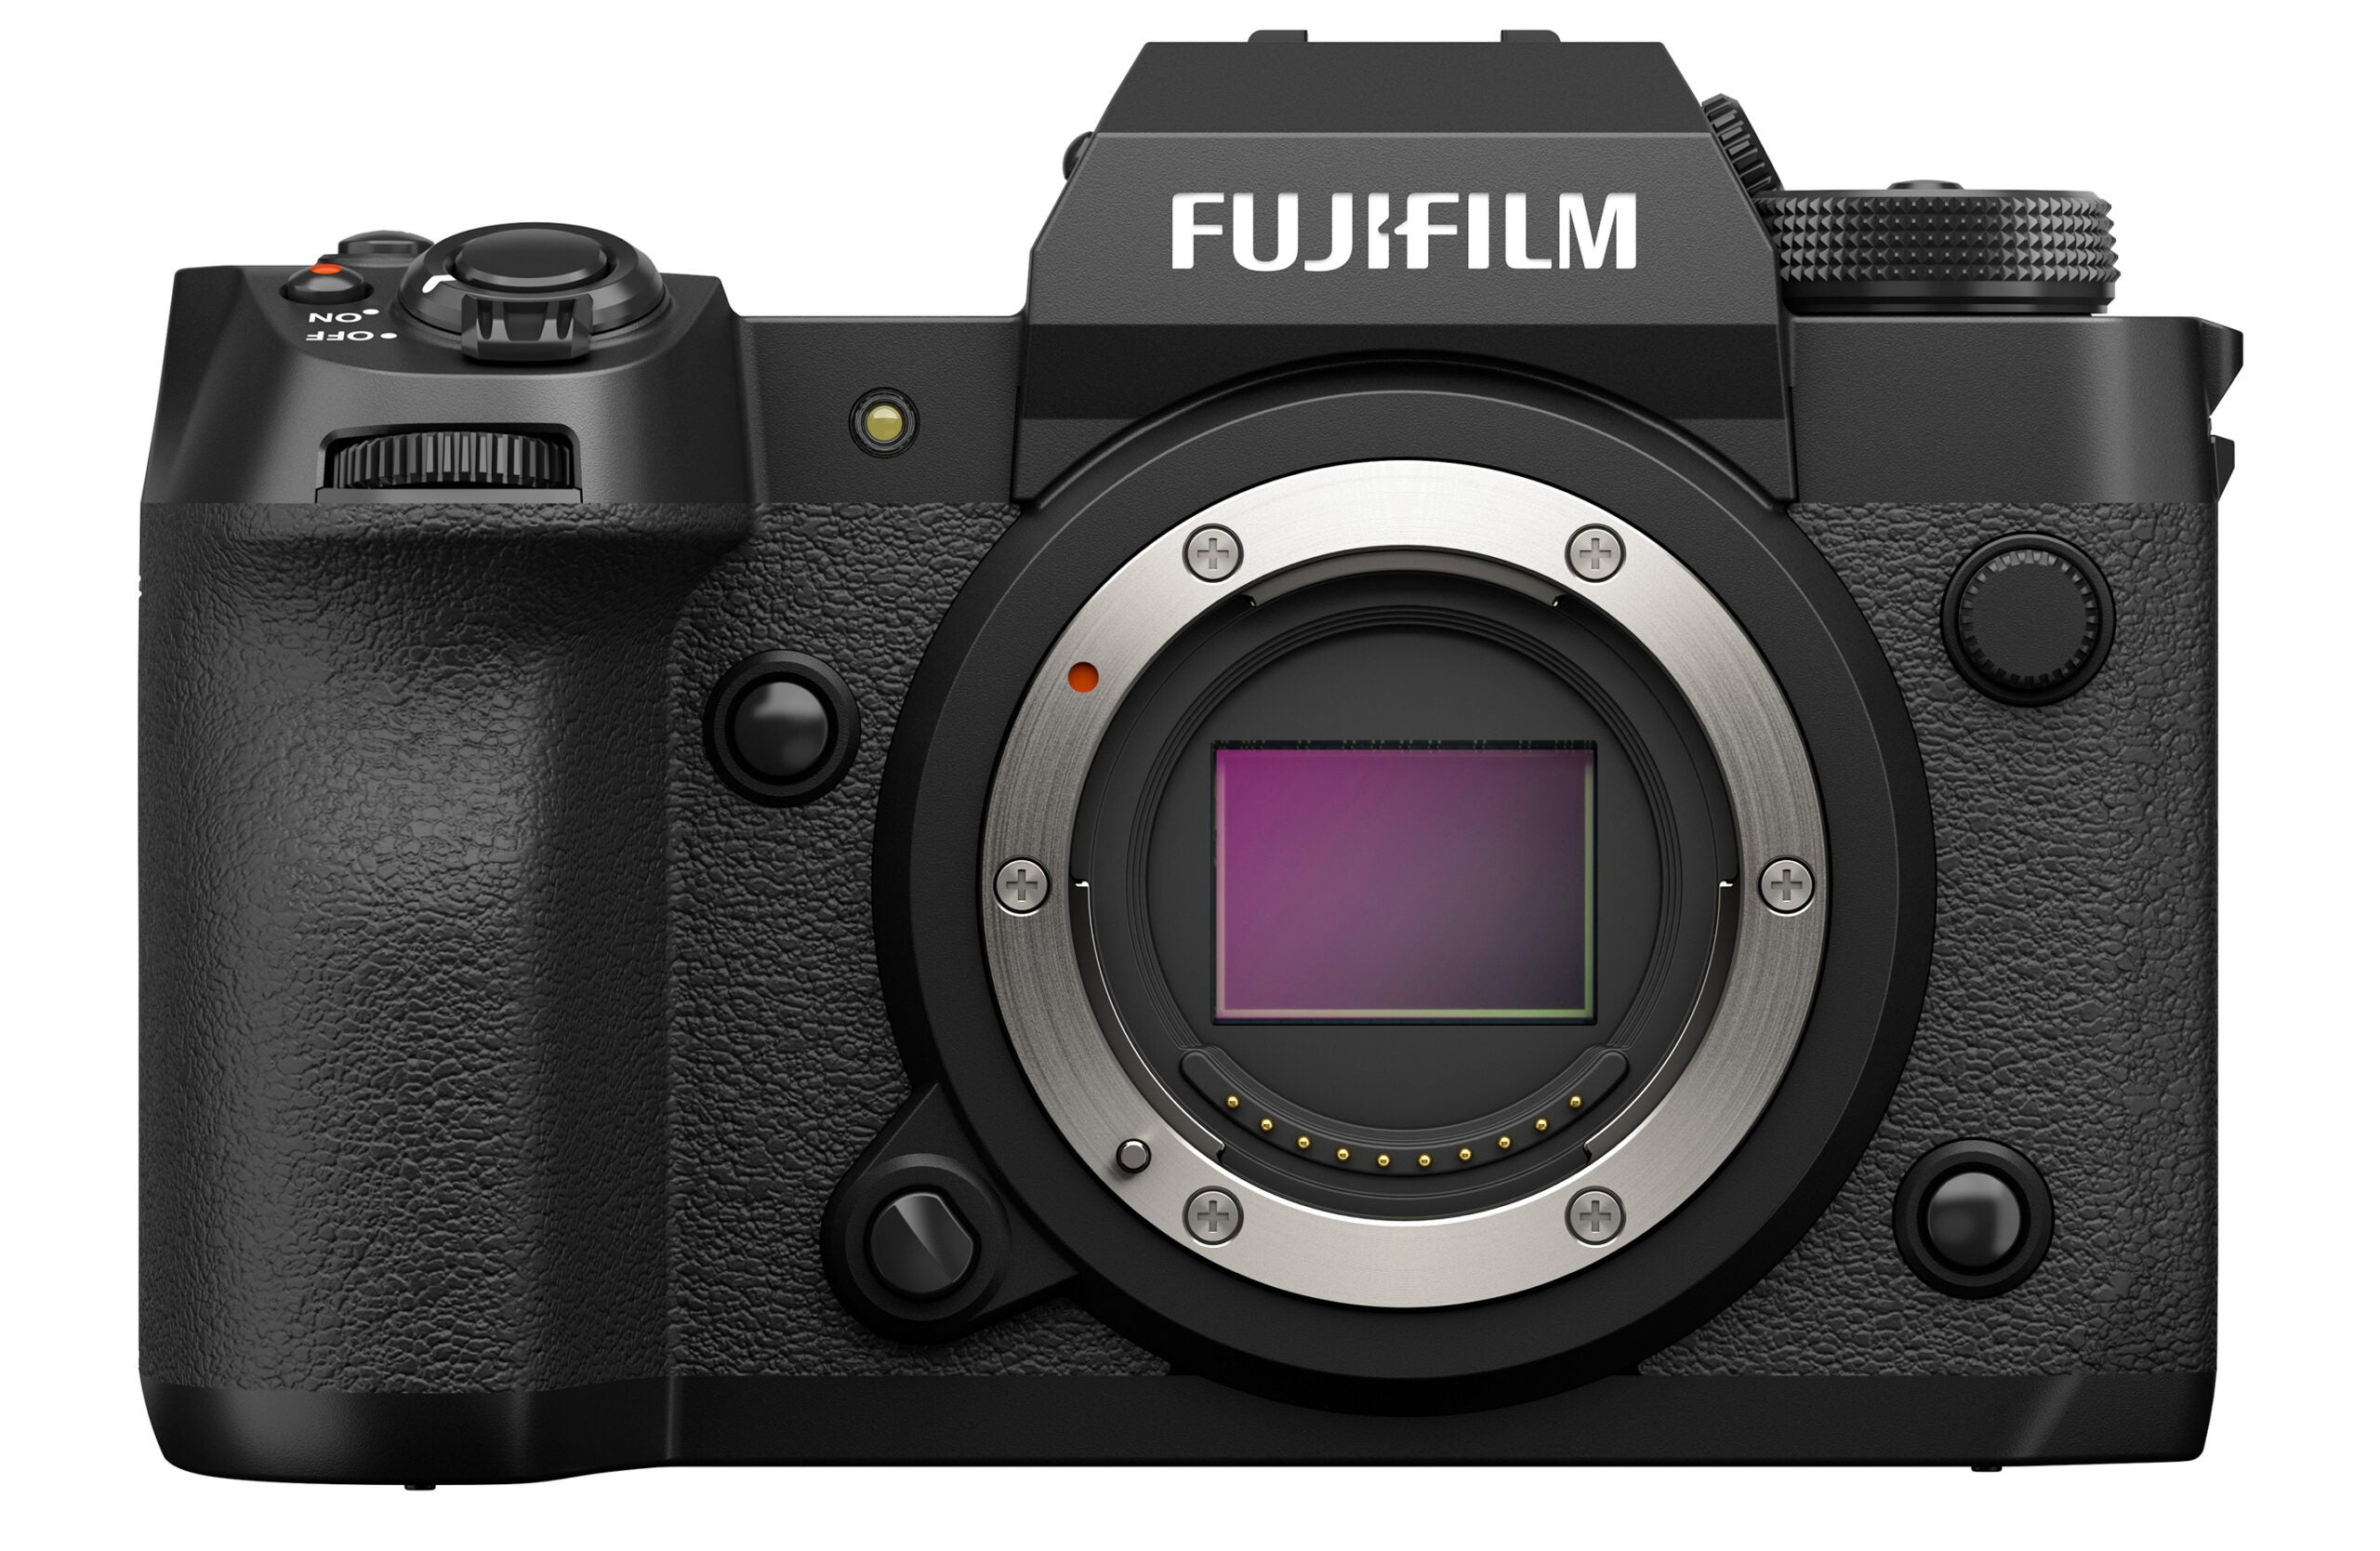 The new Fujifilm X-H2